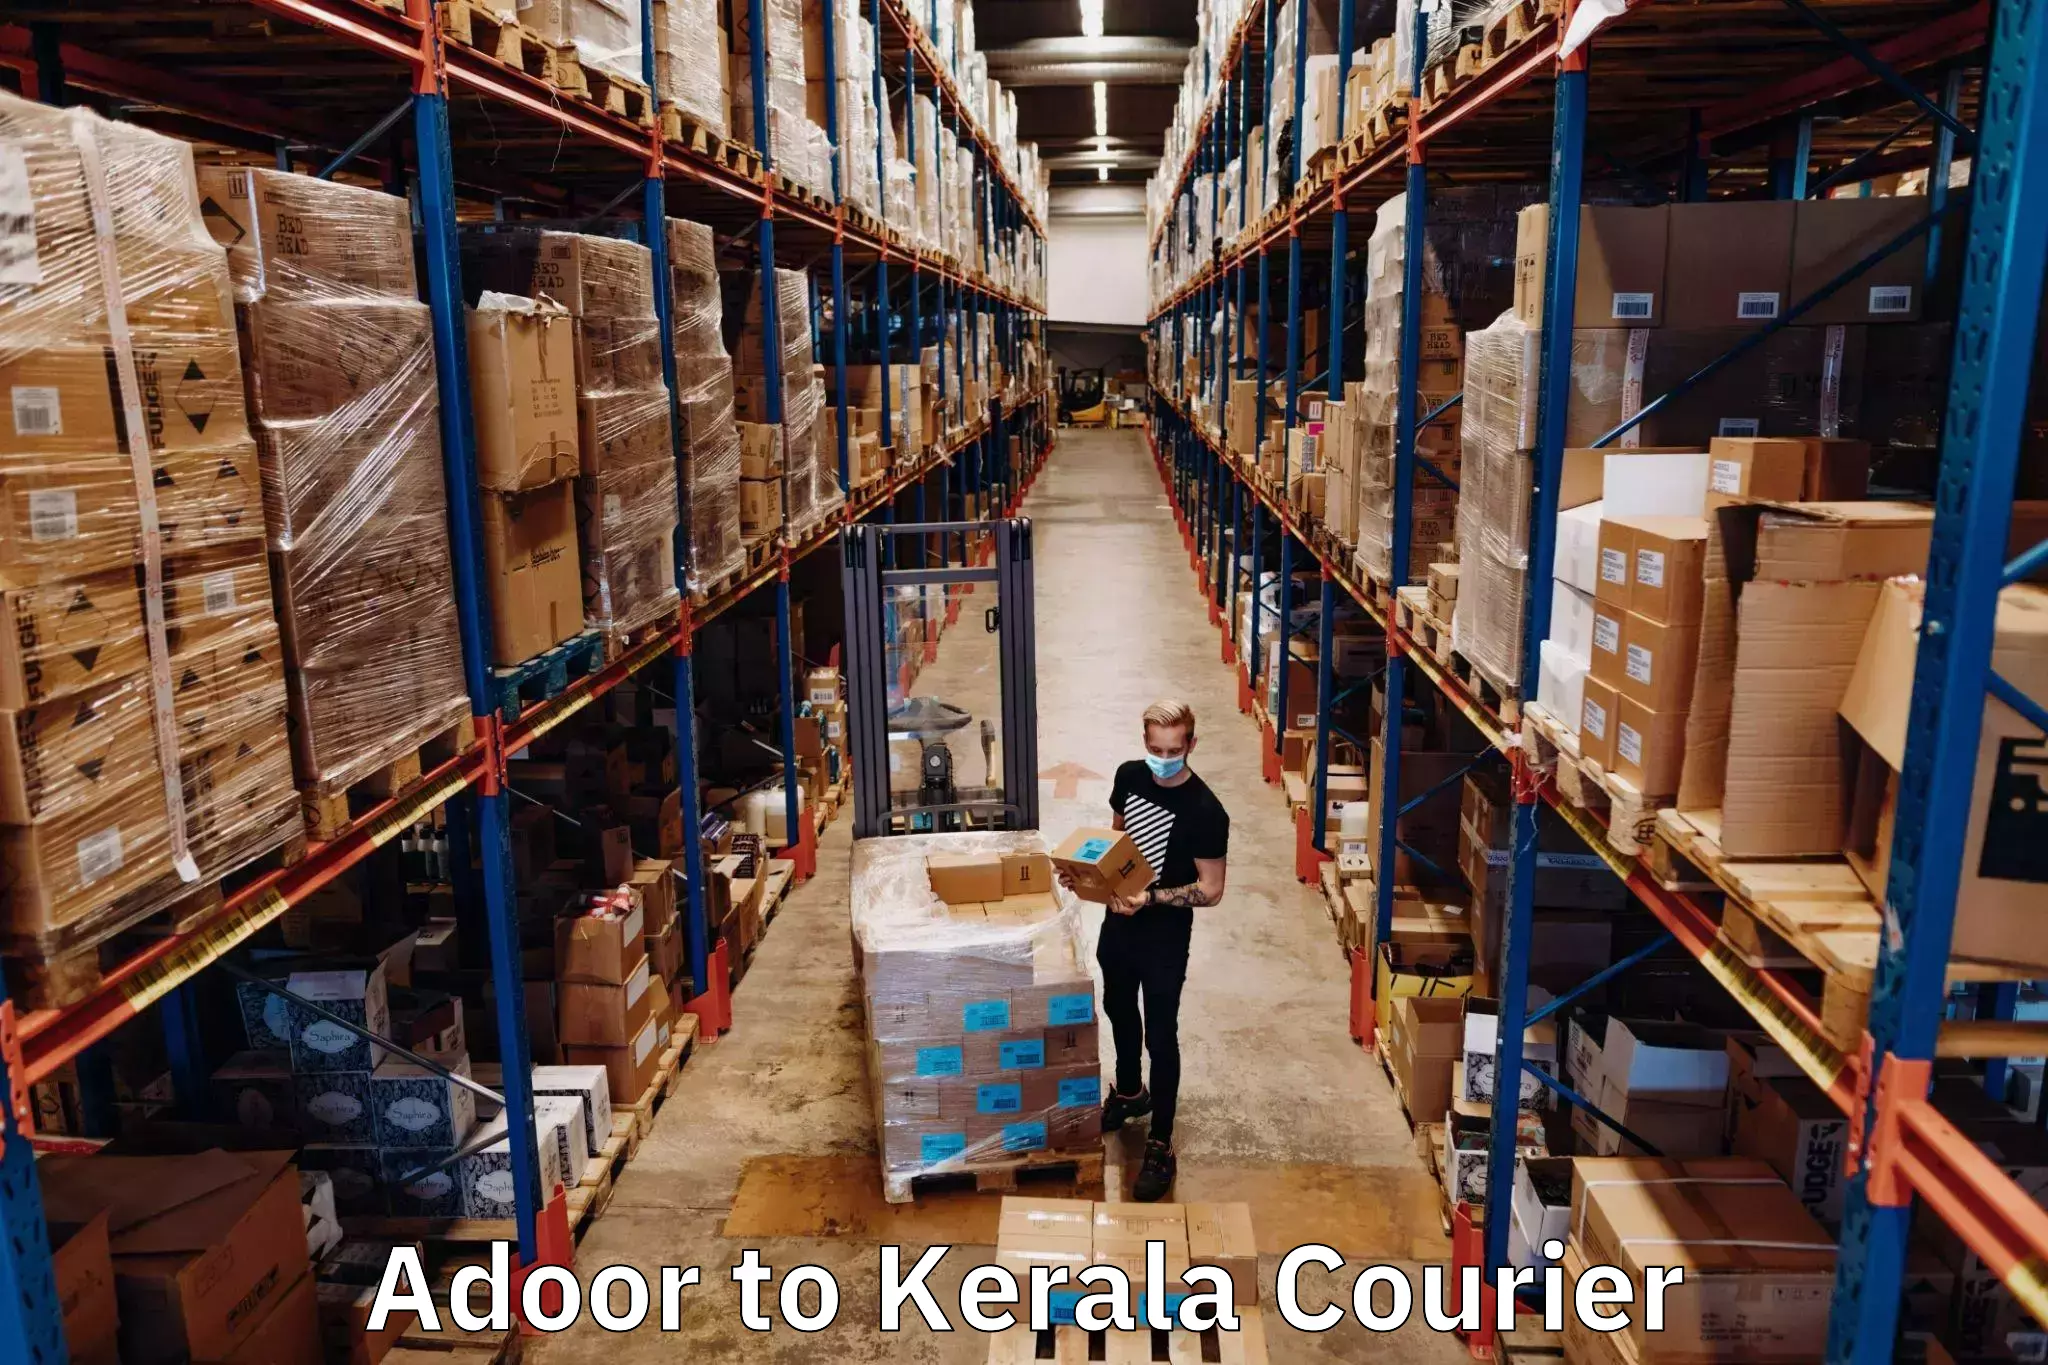 Courier service comparison Adoor to Pulpally